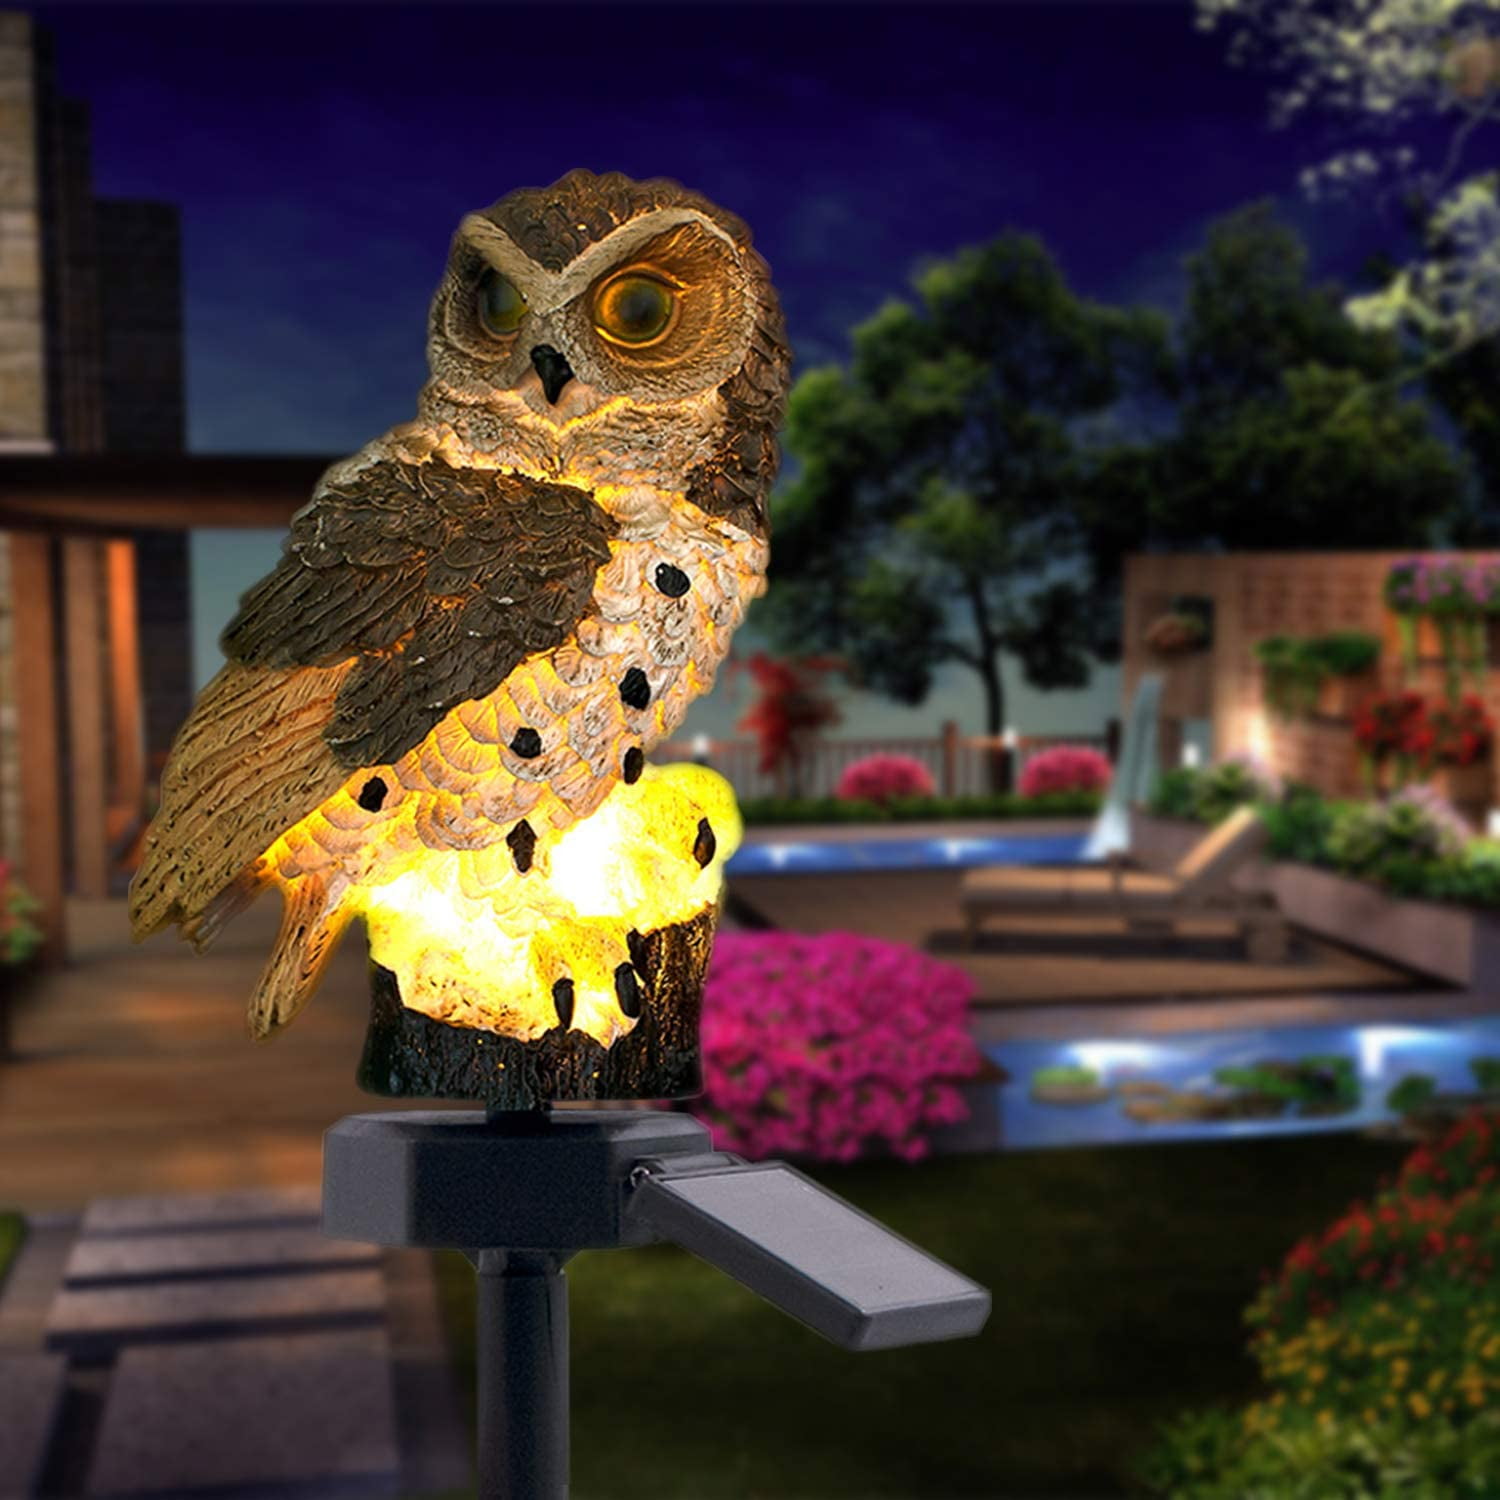 Waterproof Solar Power Garden Light Owl Ornament Outdoor Yard Lawn LED Landscape 